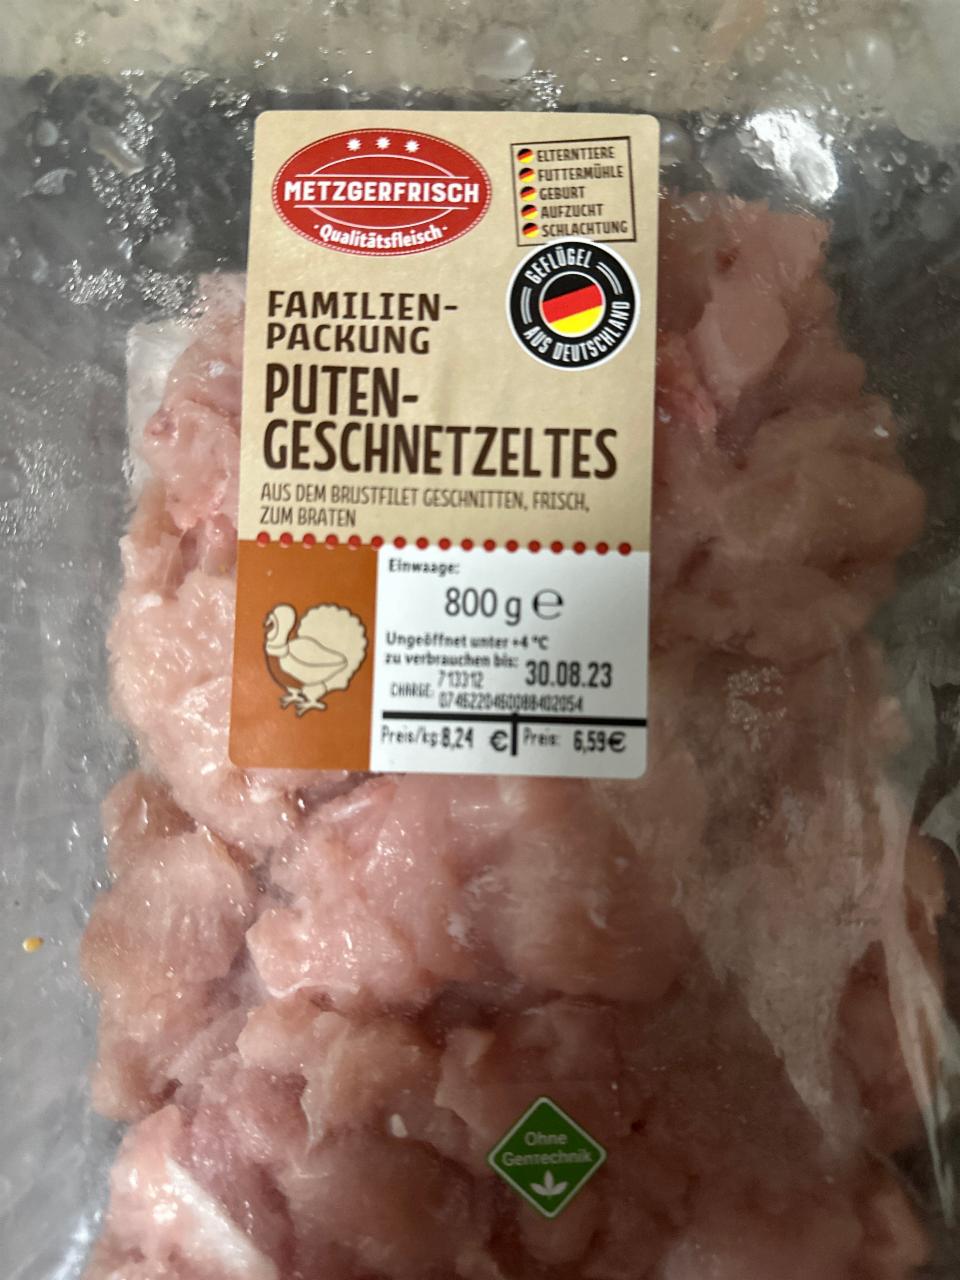 Metzgerfrisch ⋙ пищевая калорийность, - Puten-Geschnetzeltes ценность мясо птицы